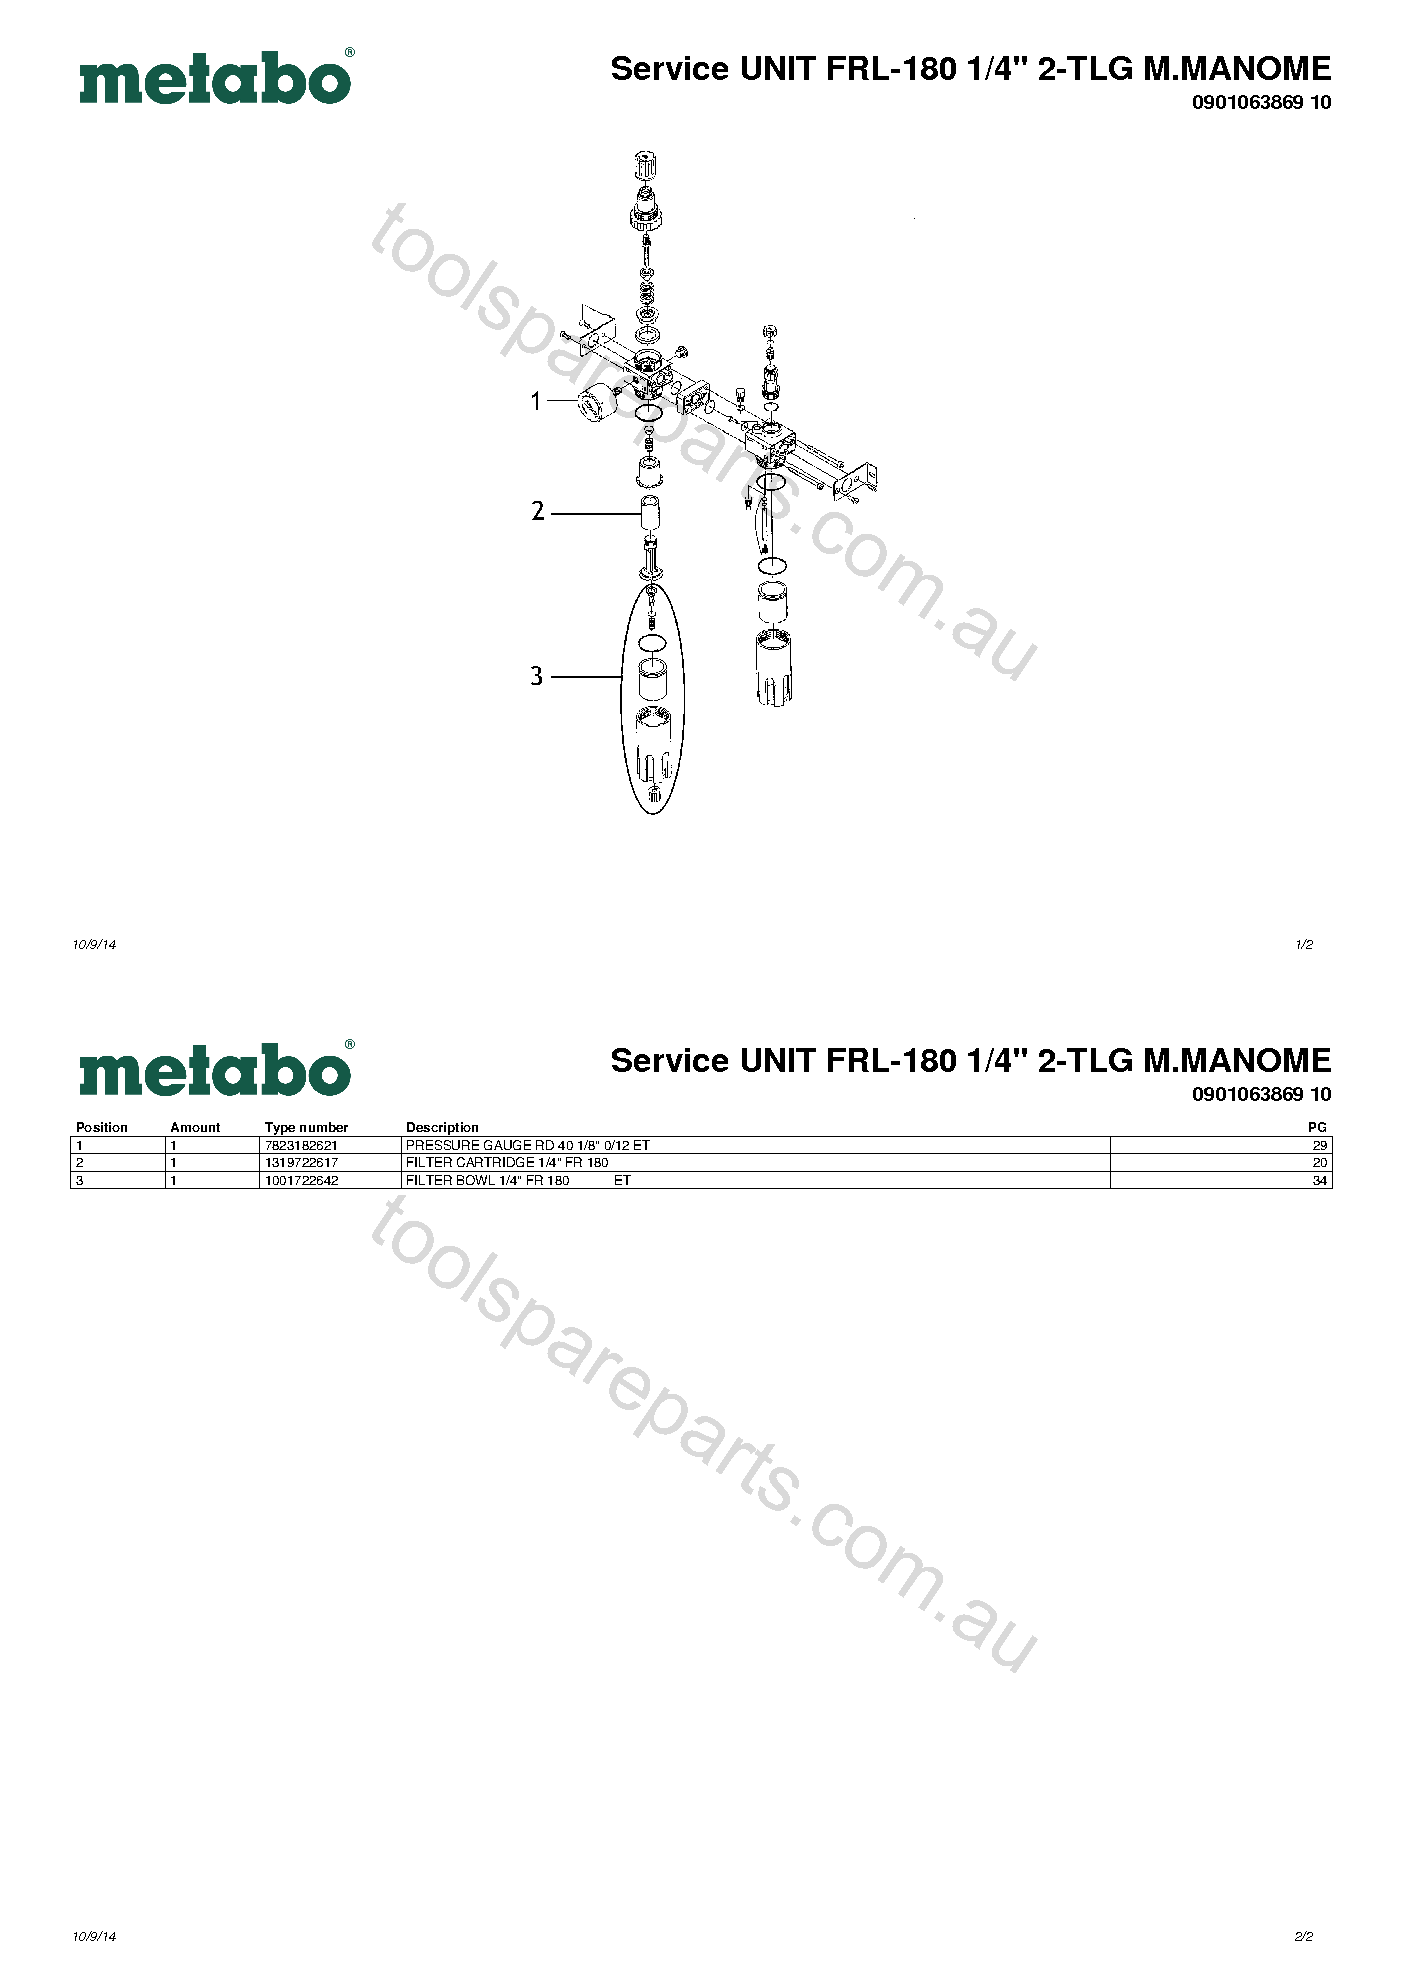 Metabo Service UNIT FRL-180 1/4